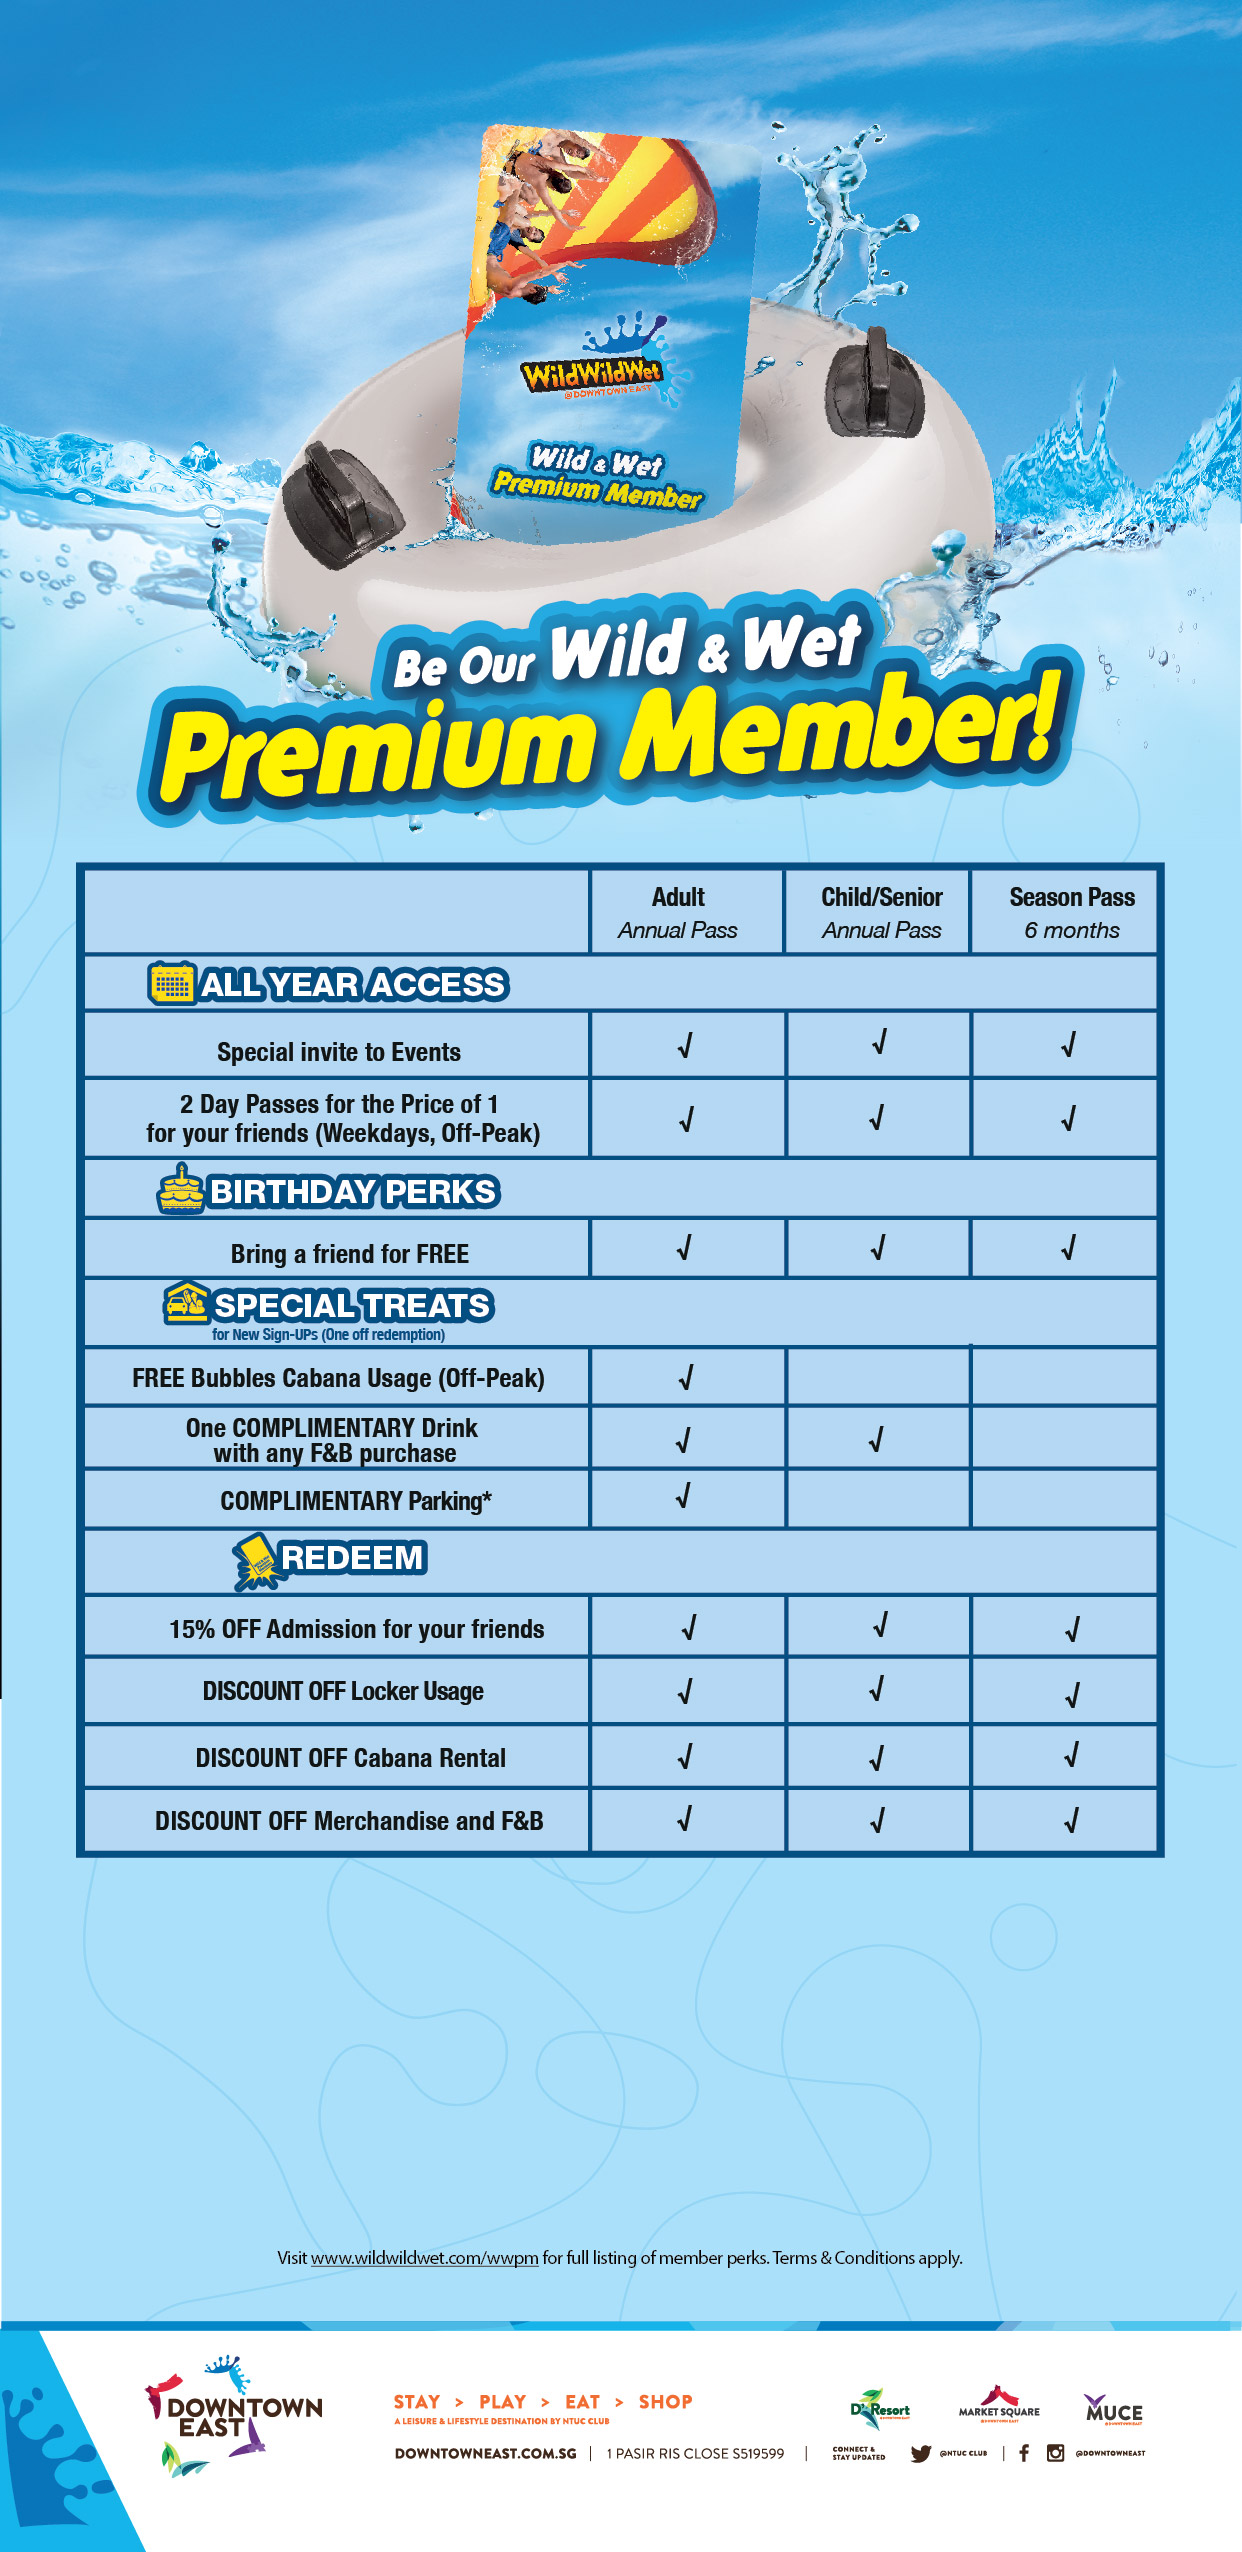 Wild & Wet Premium Membership Benefits